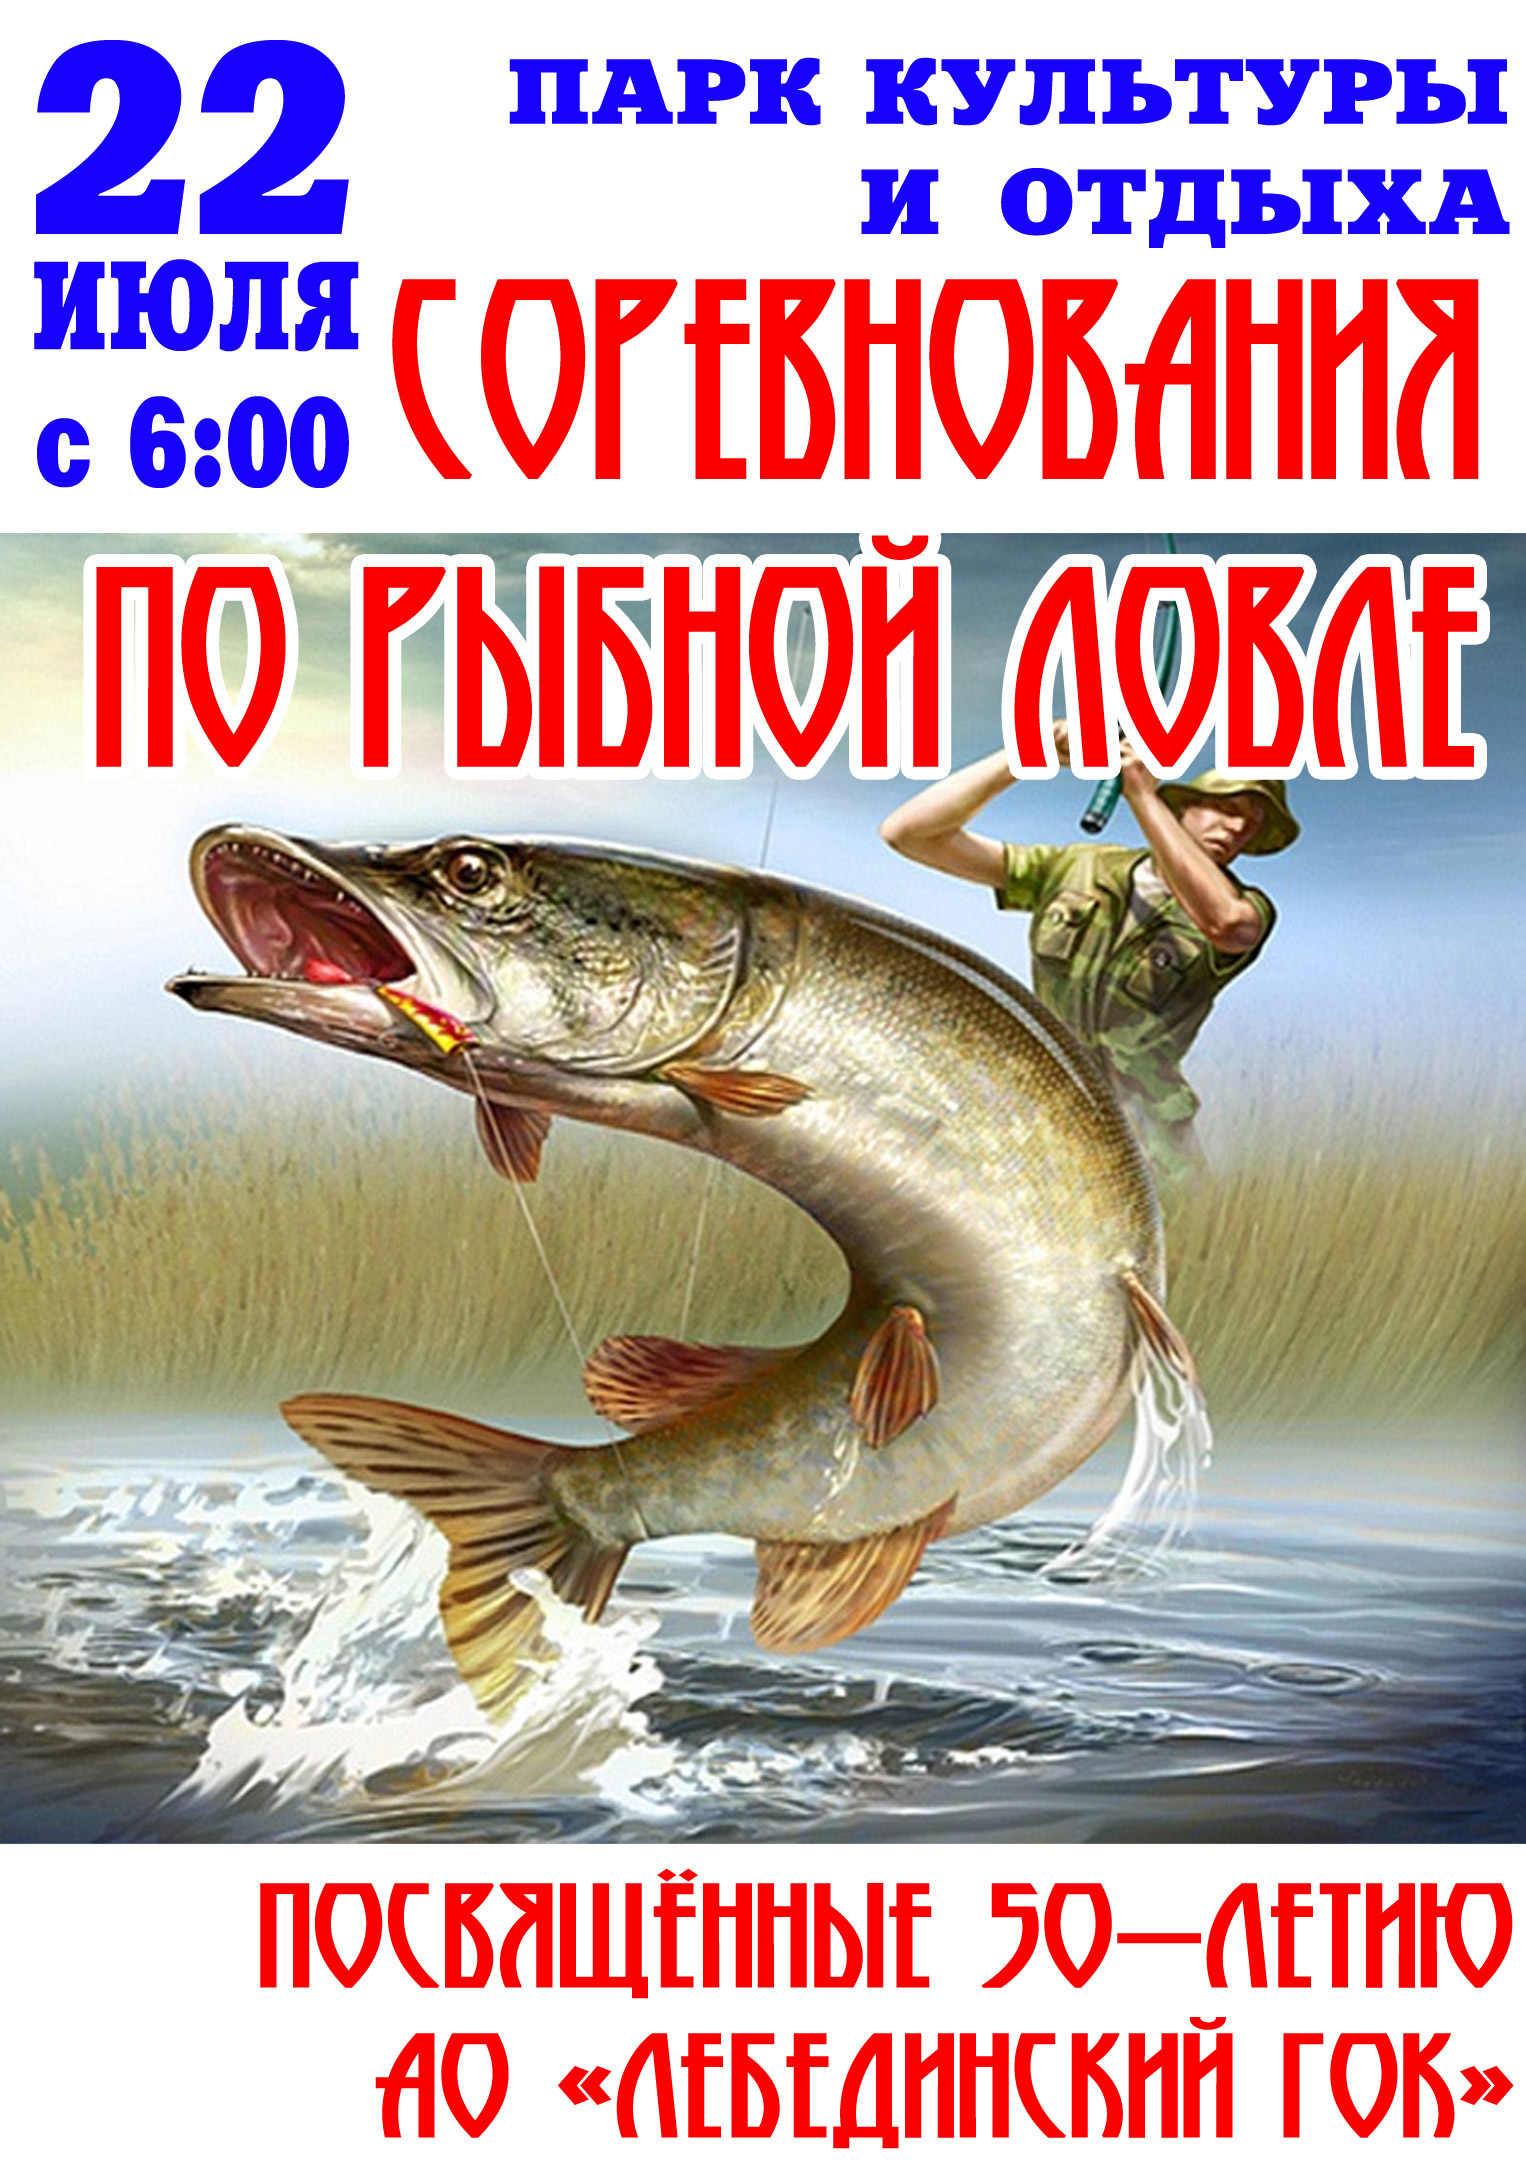 Соревнования по рыбной ловле, посвящённые 50-летию АО «Лебединский ГОК»